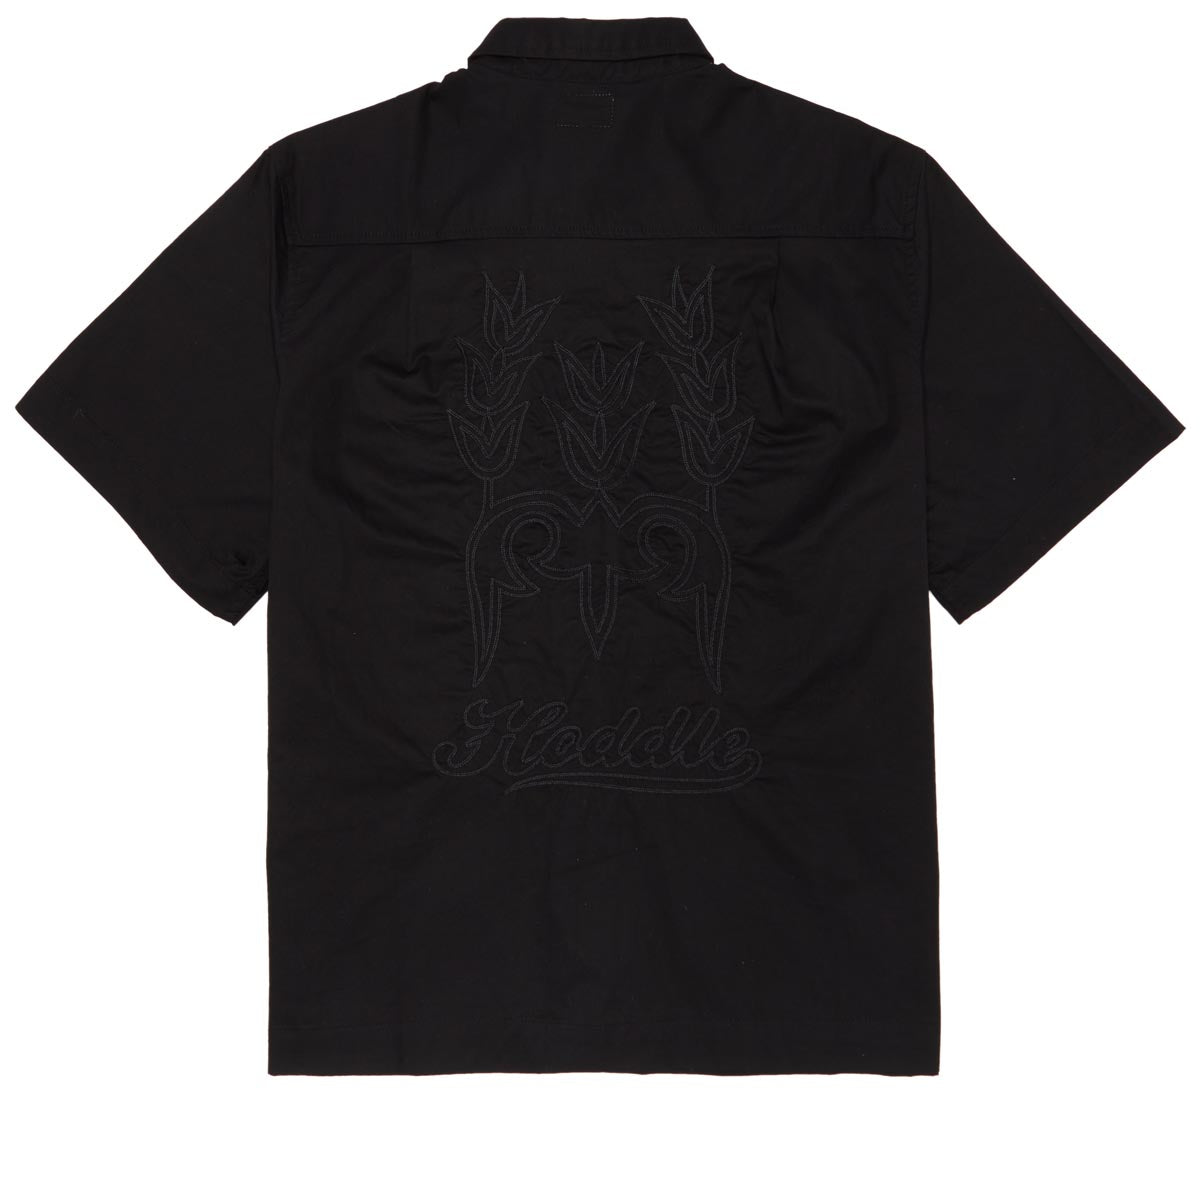 Hoddle Cheval Shirt - Black image 2